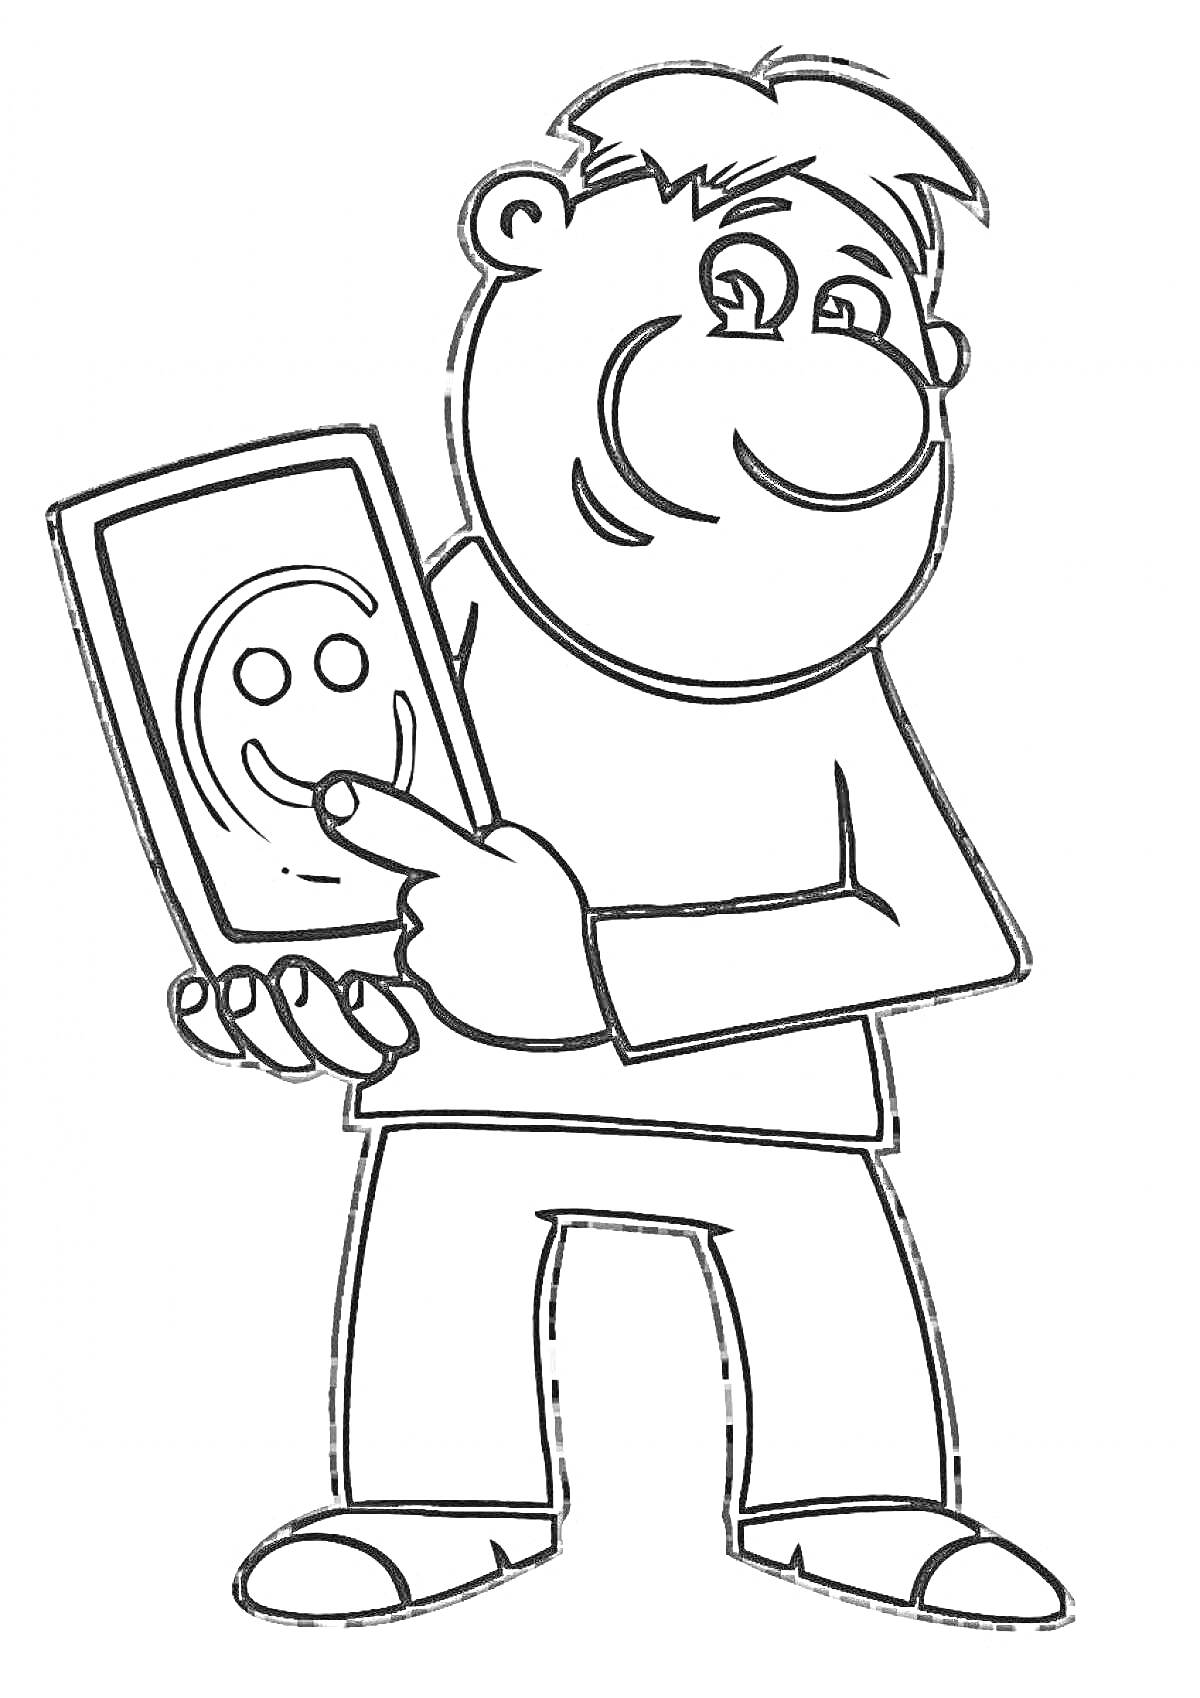 Человек, держащий планшет с изображением смайлика